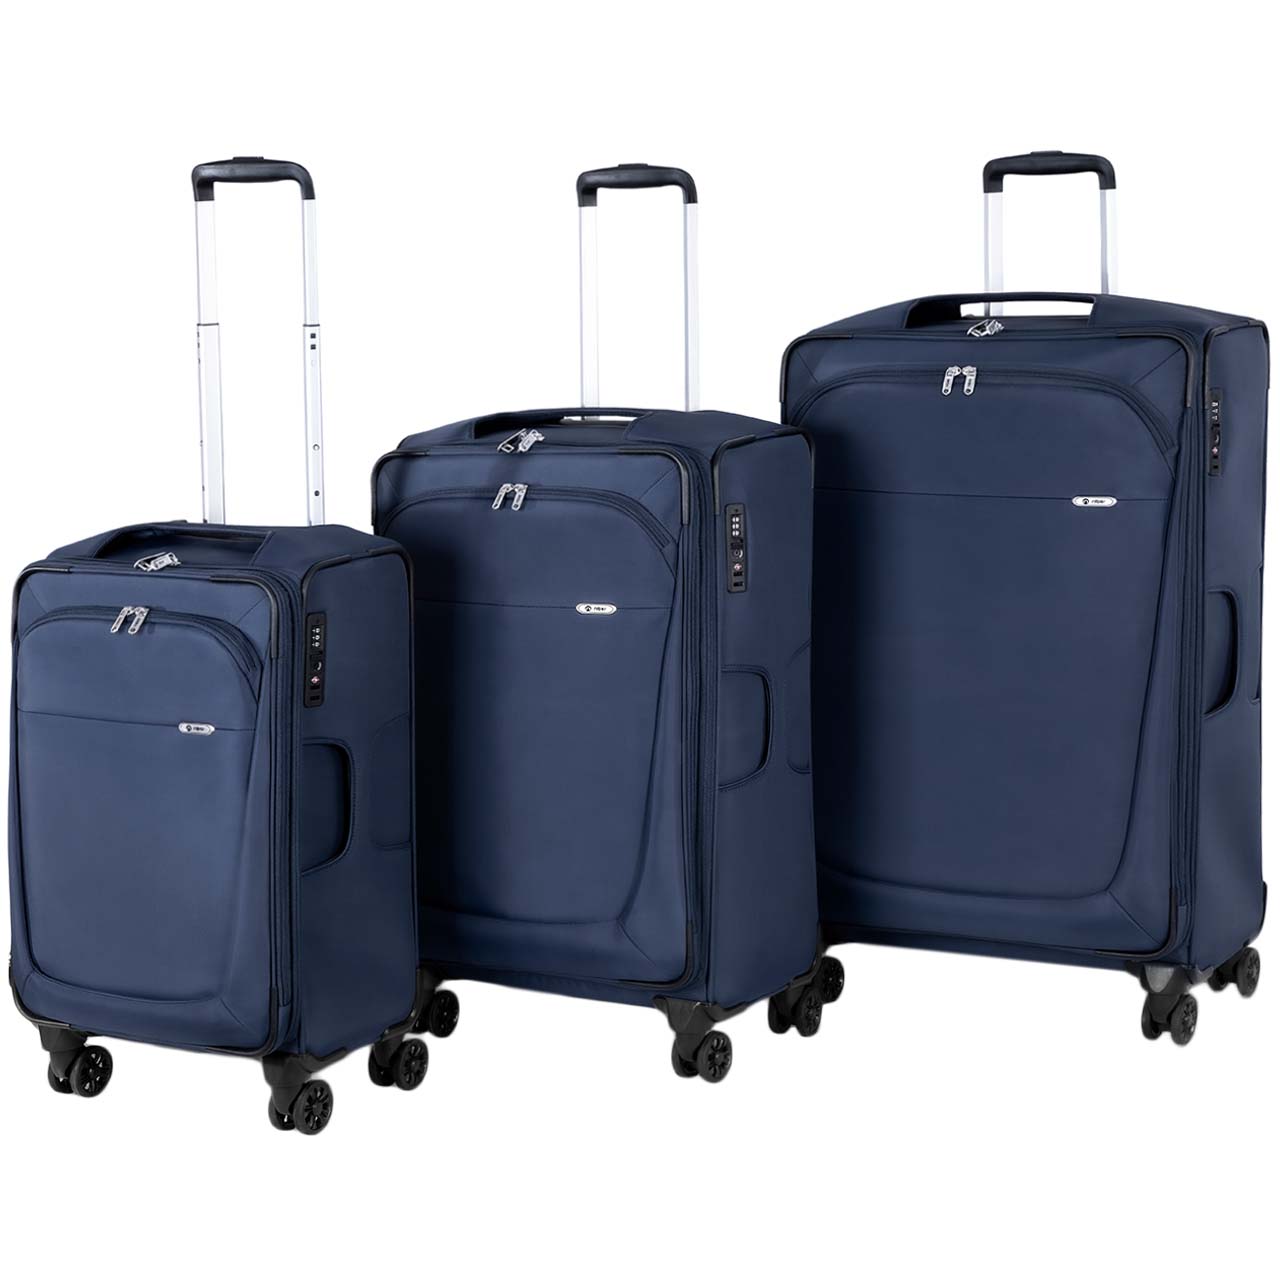 مجموعه سه عددی چمدان نیلپر مدل آوان کد 700678 – 111